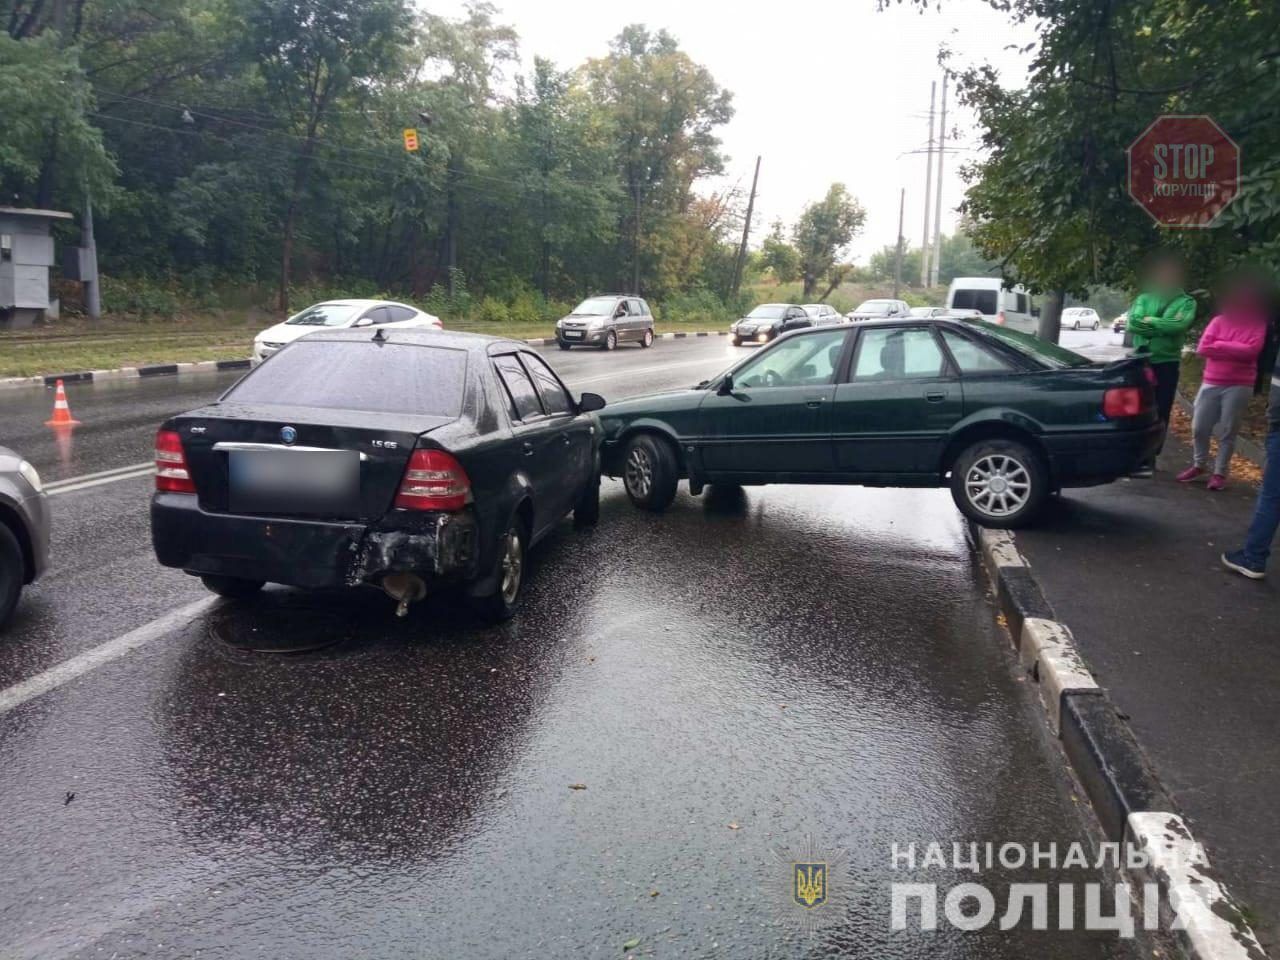  У Київському районі Харкова зіткнулися п'ять автівок Фото: Нацполіція